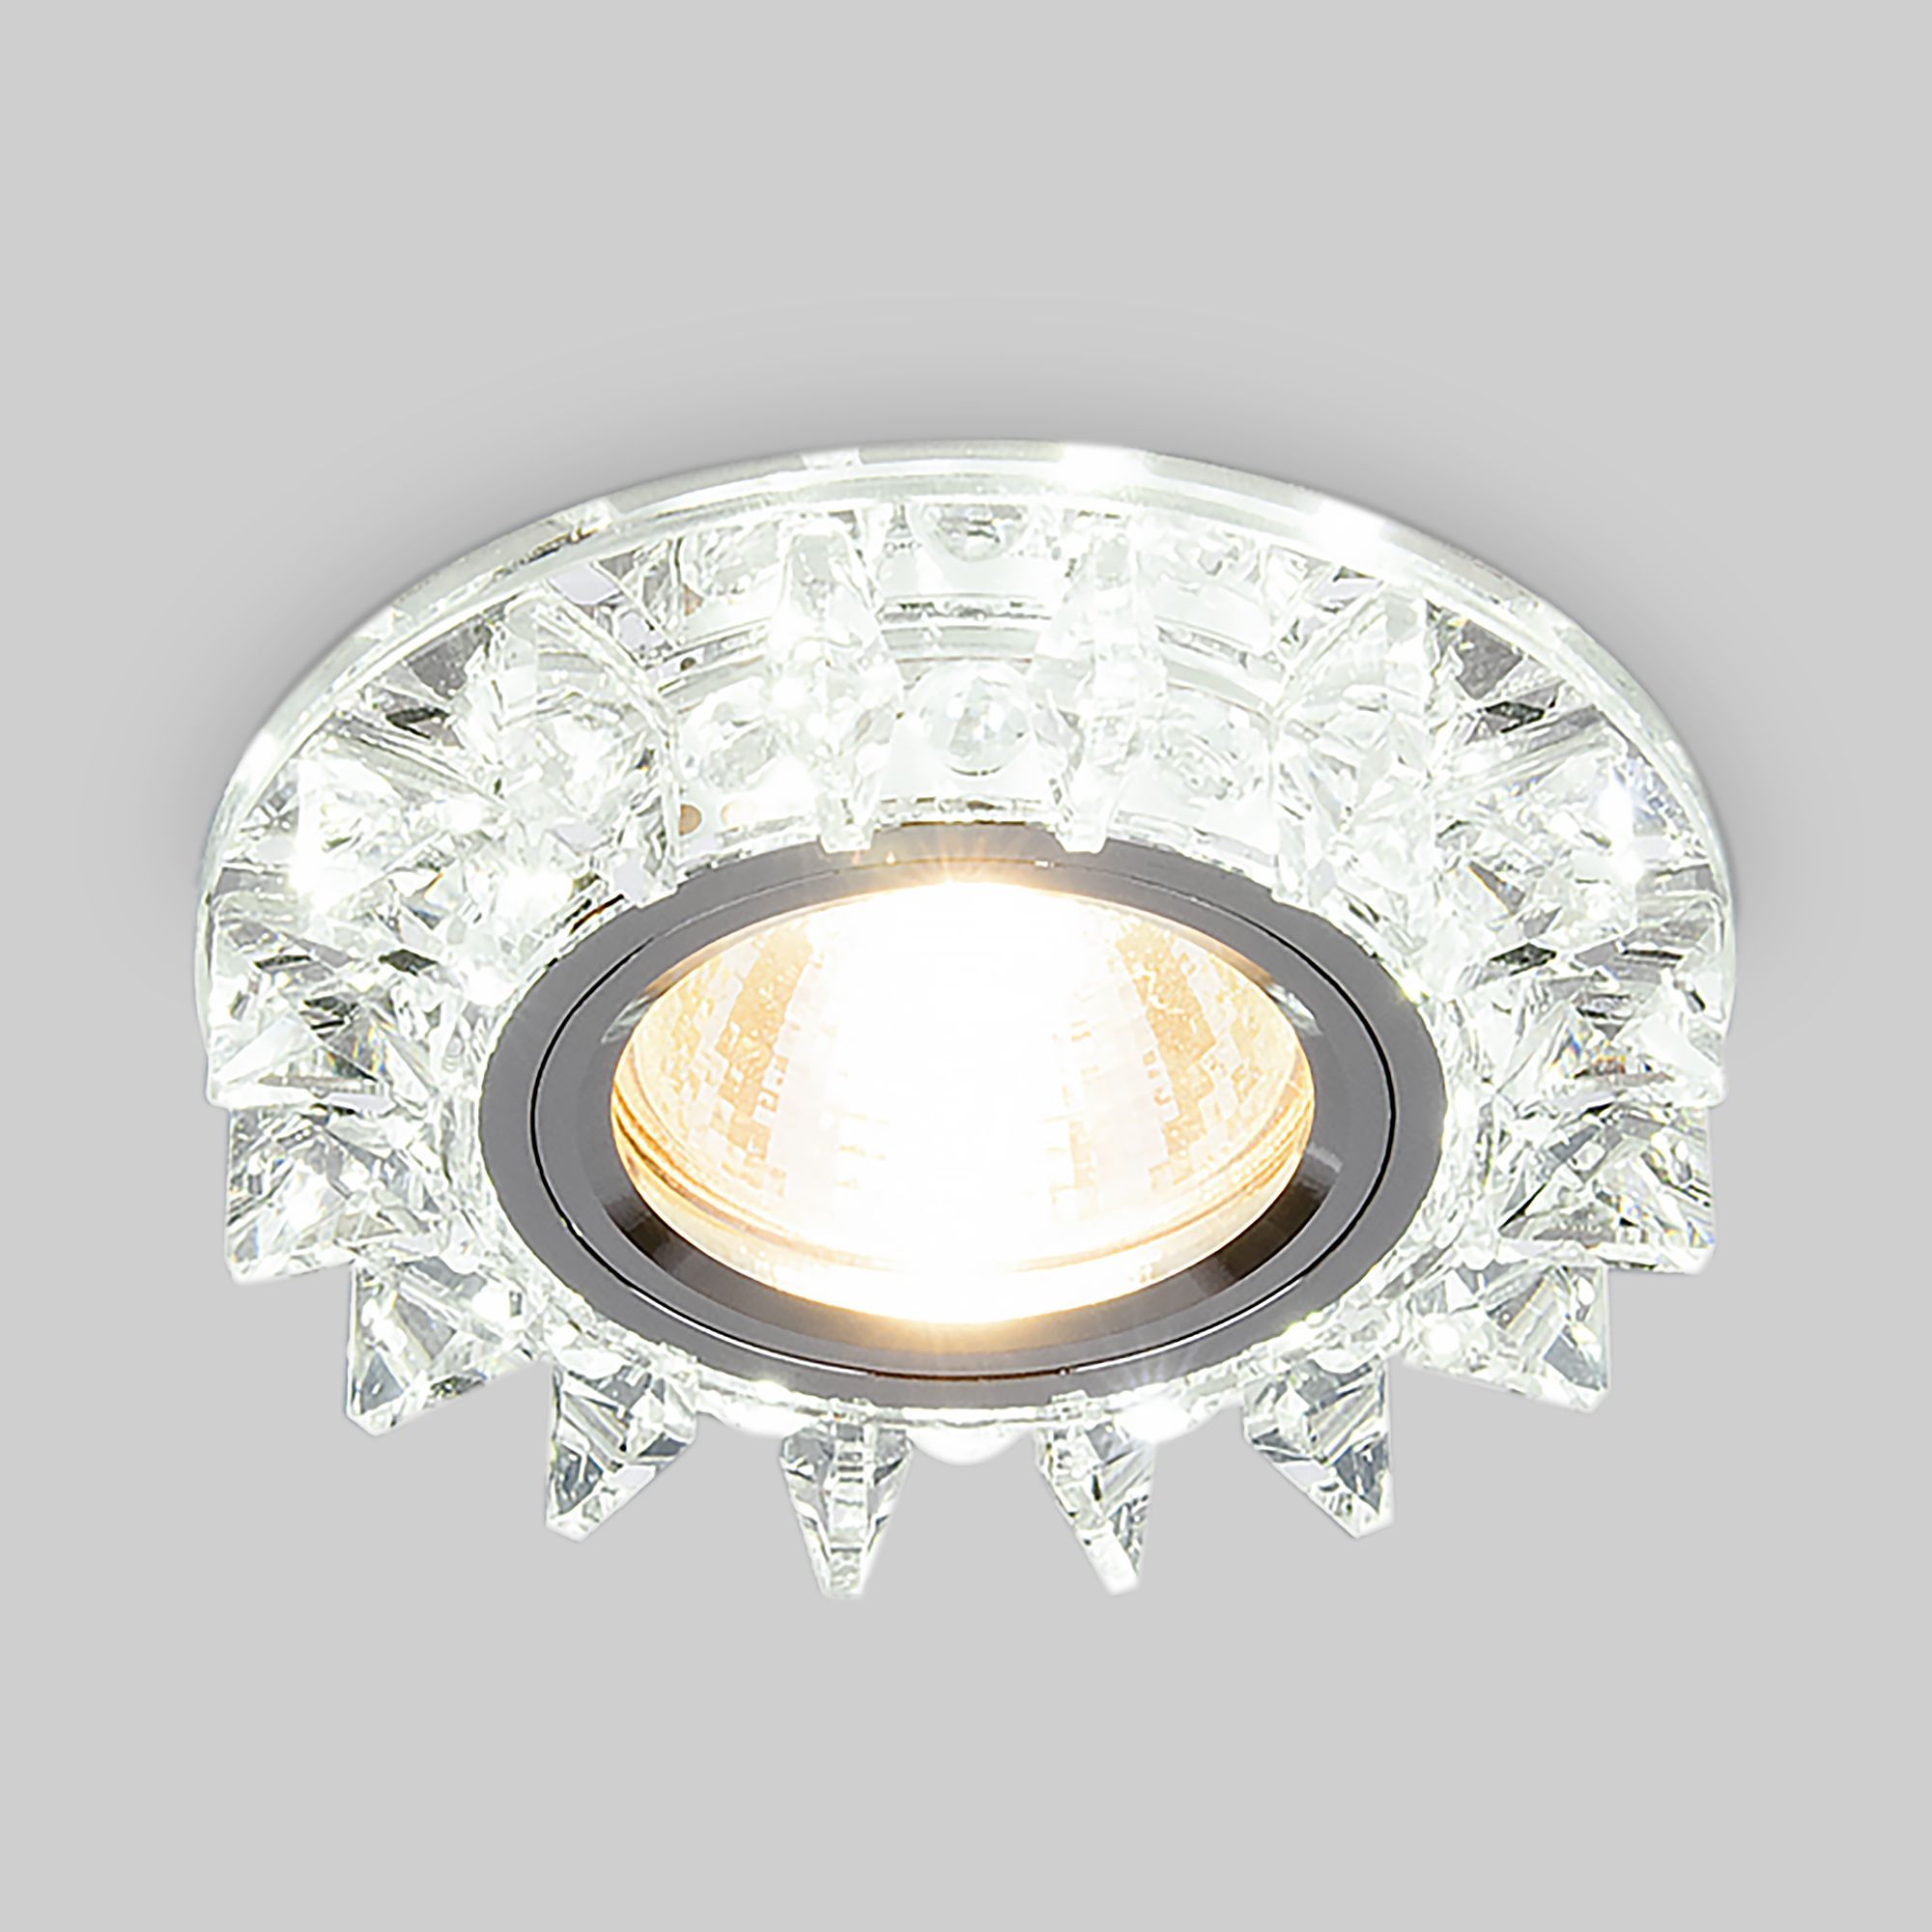 Встраиваемый точечный светильник с подсветкой 6037 MR16  SL зеркальный/серебро